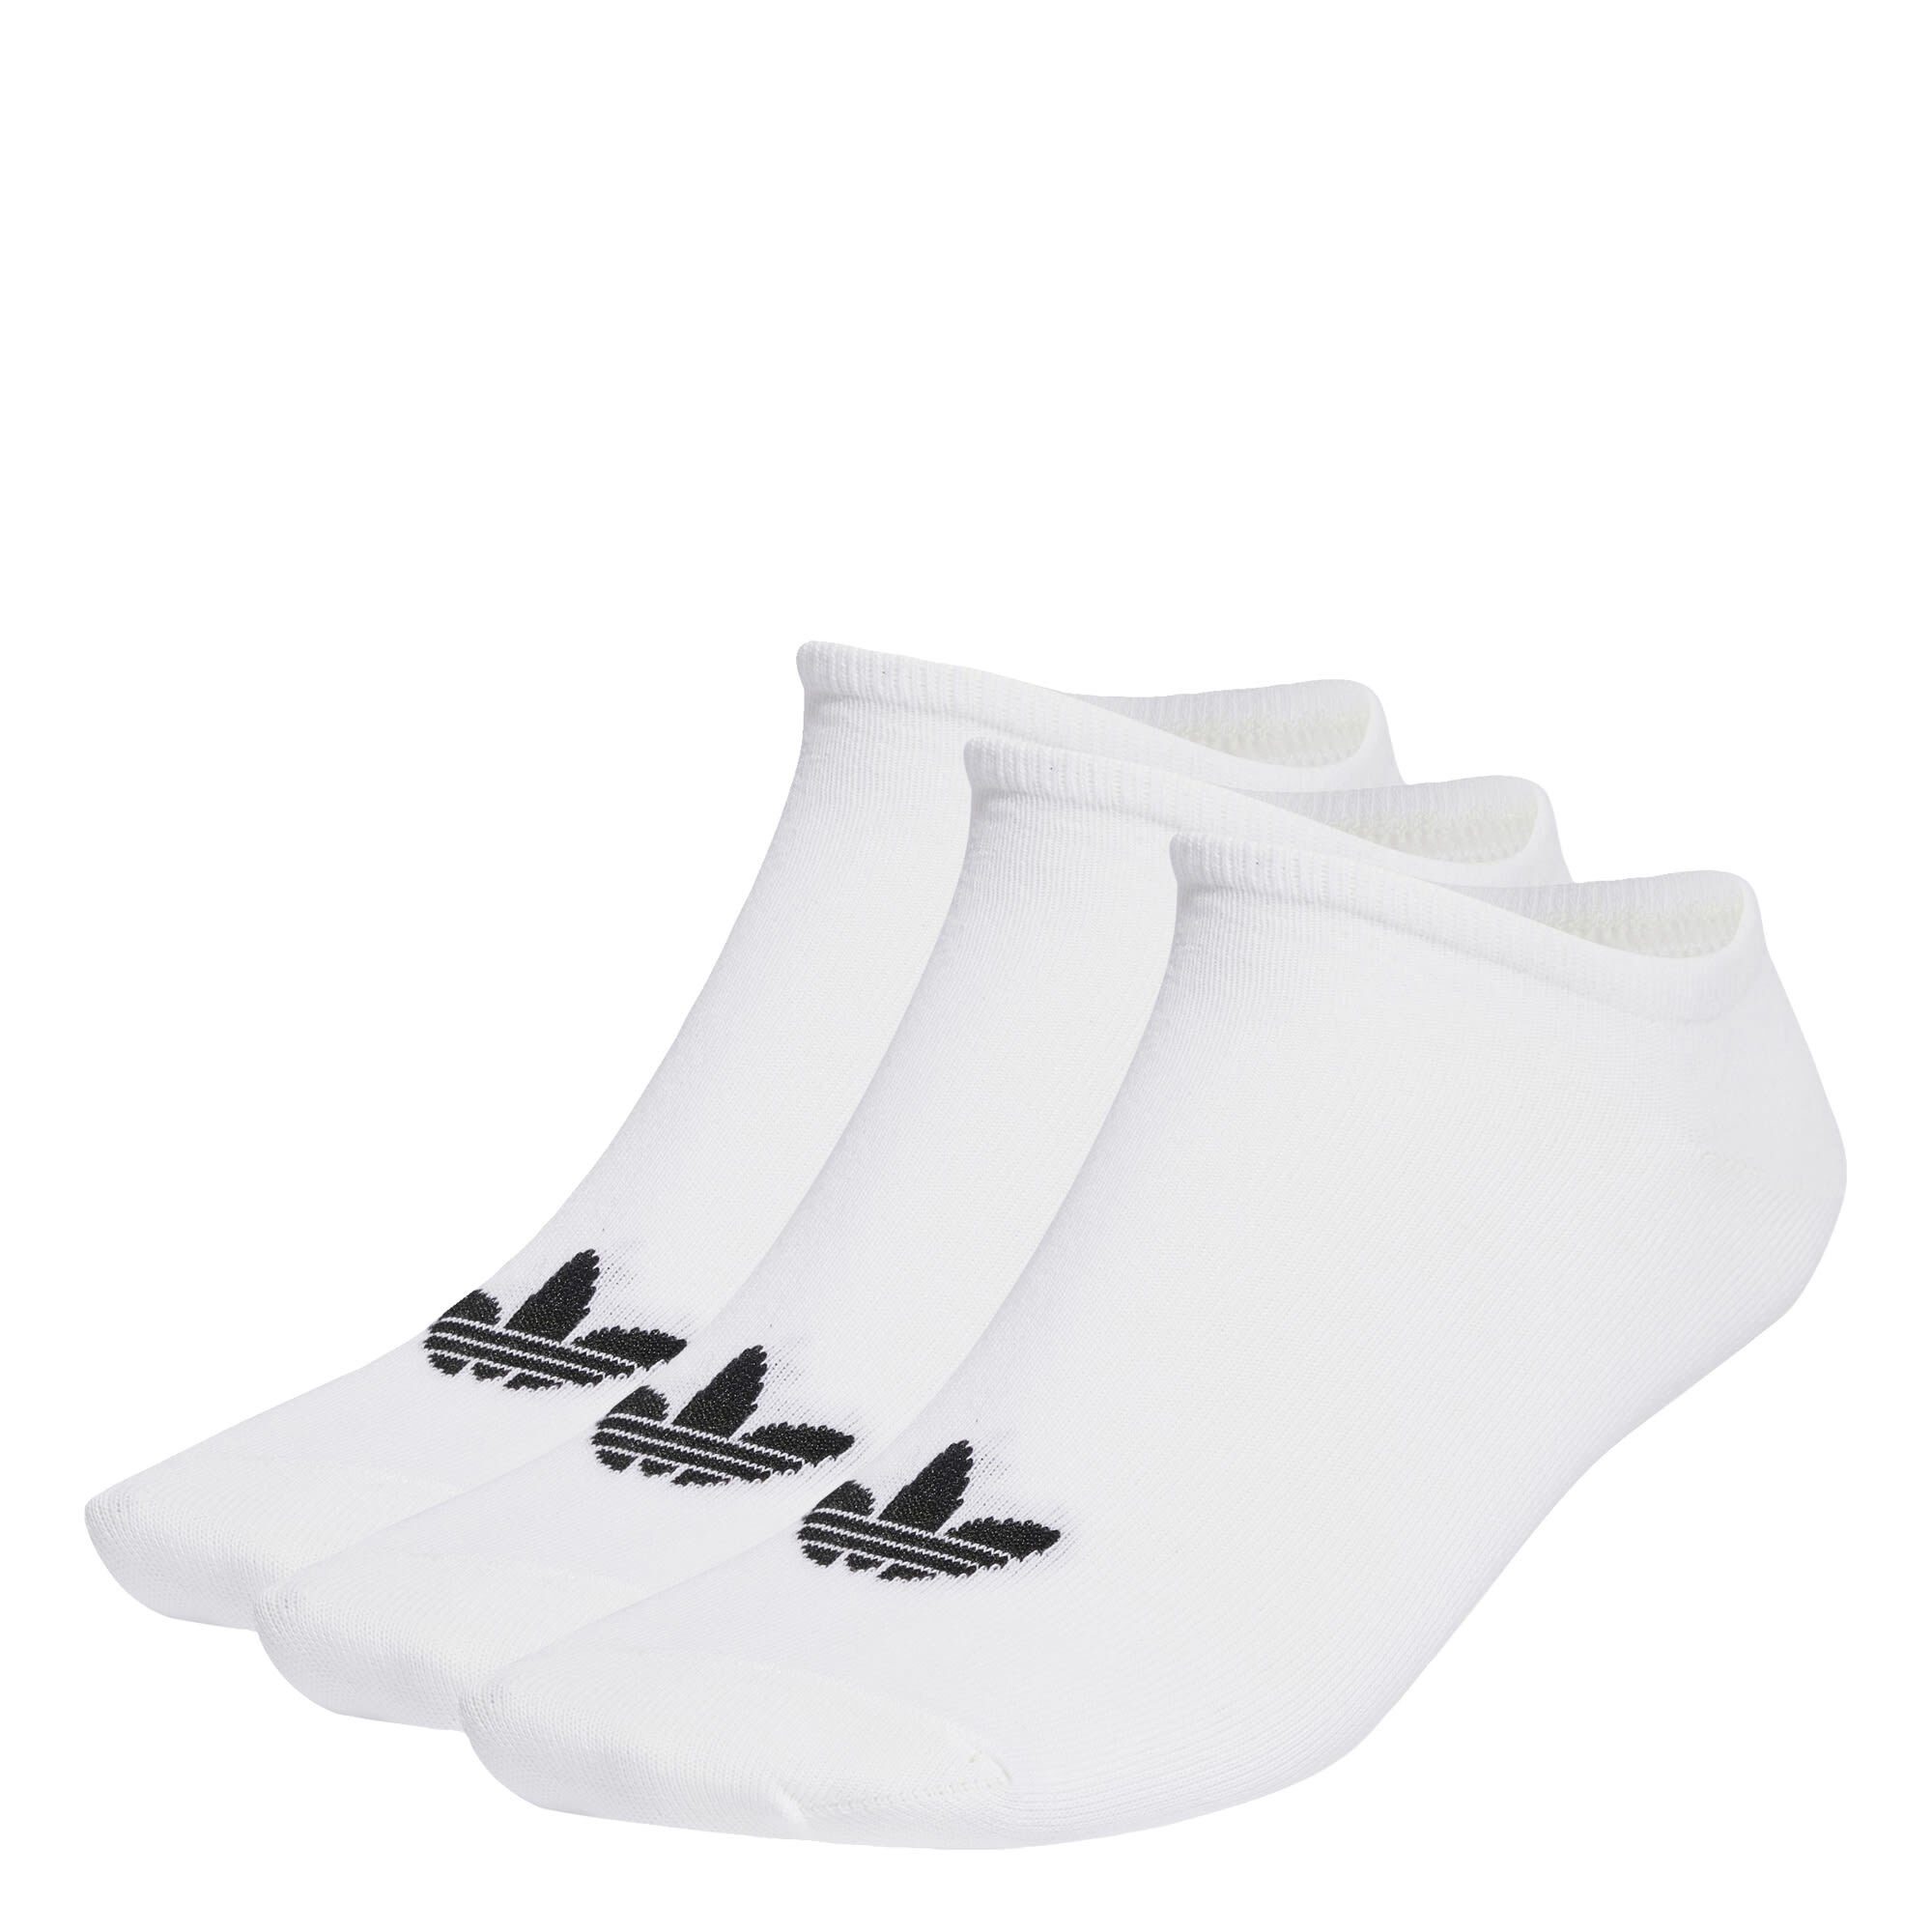 6 PAAR adidas SOCKEN, Sportsocken Originals LINER TREFOIL White